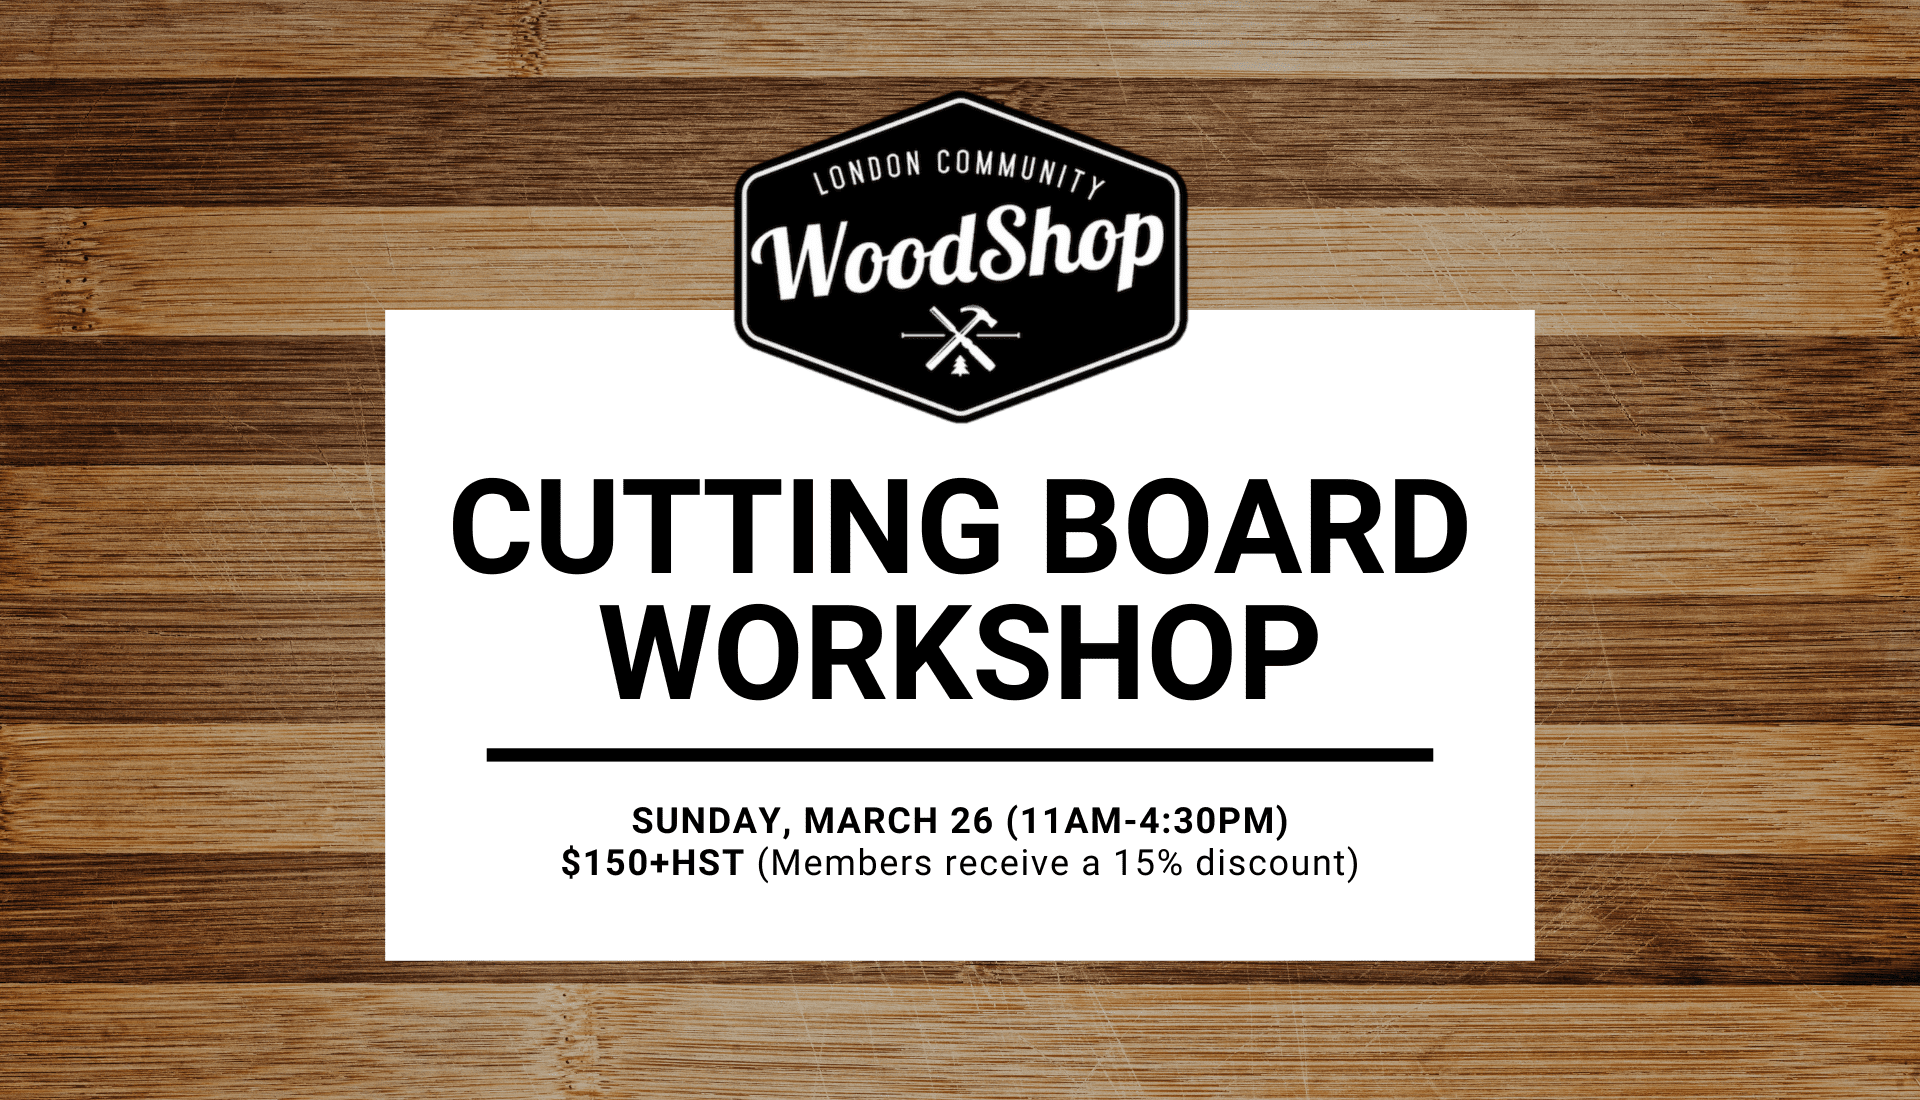 Cutting Board Workshop - Sunday, March 26